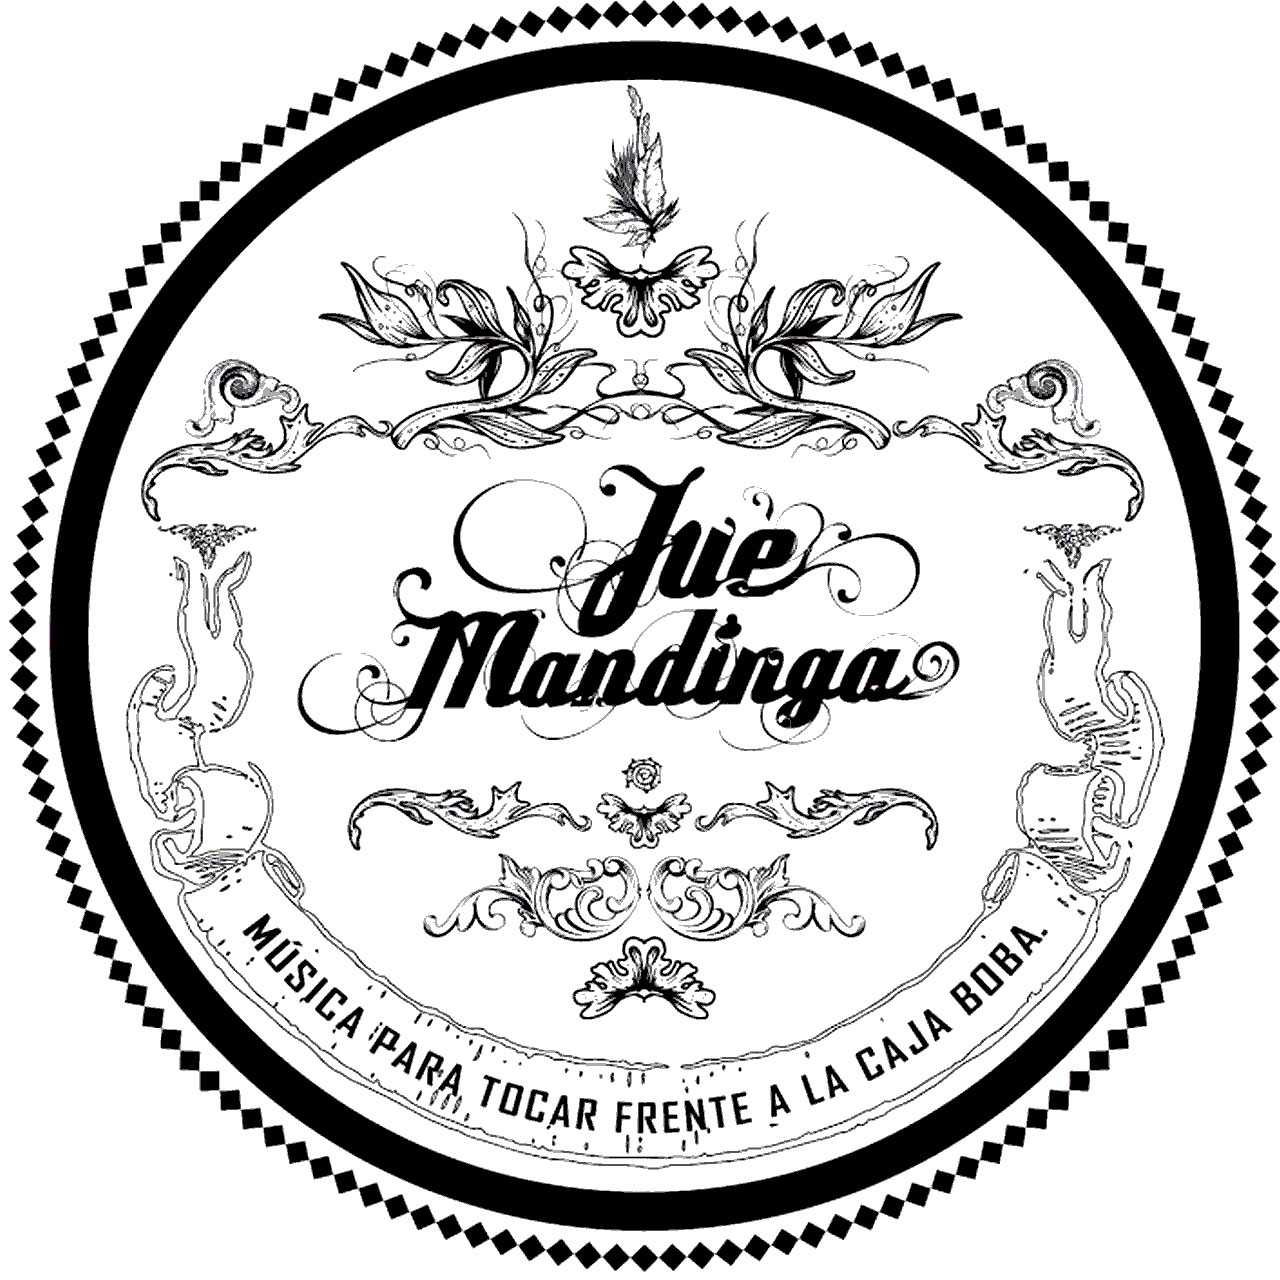 Jue' Mandinga - Música para tocar frente a la caja boba - 2017